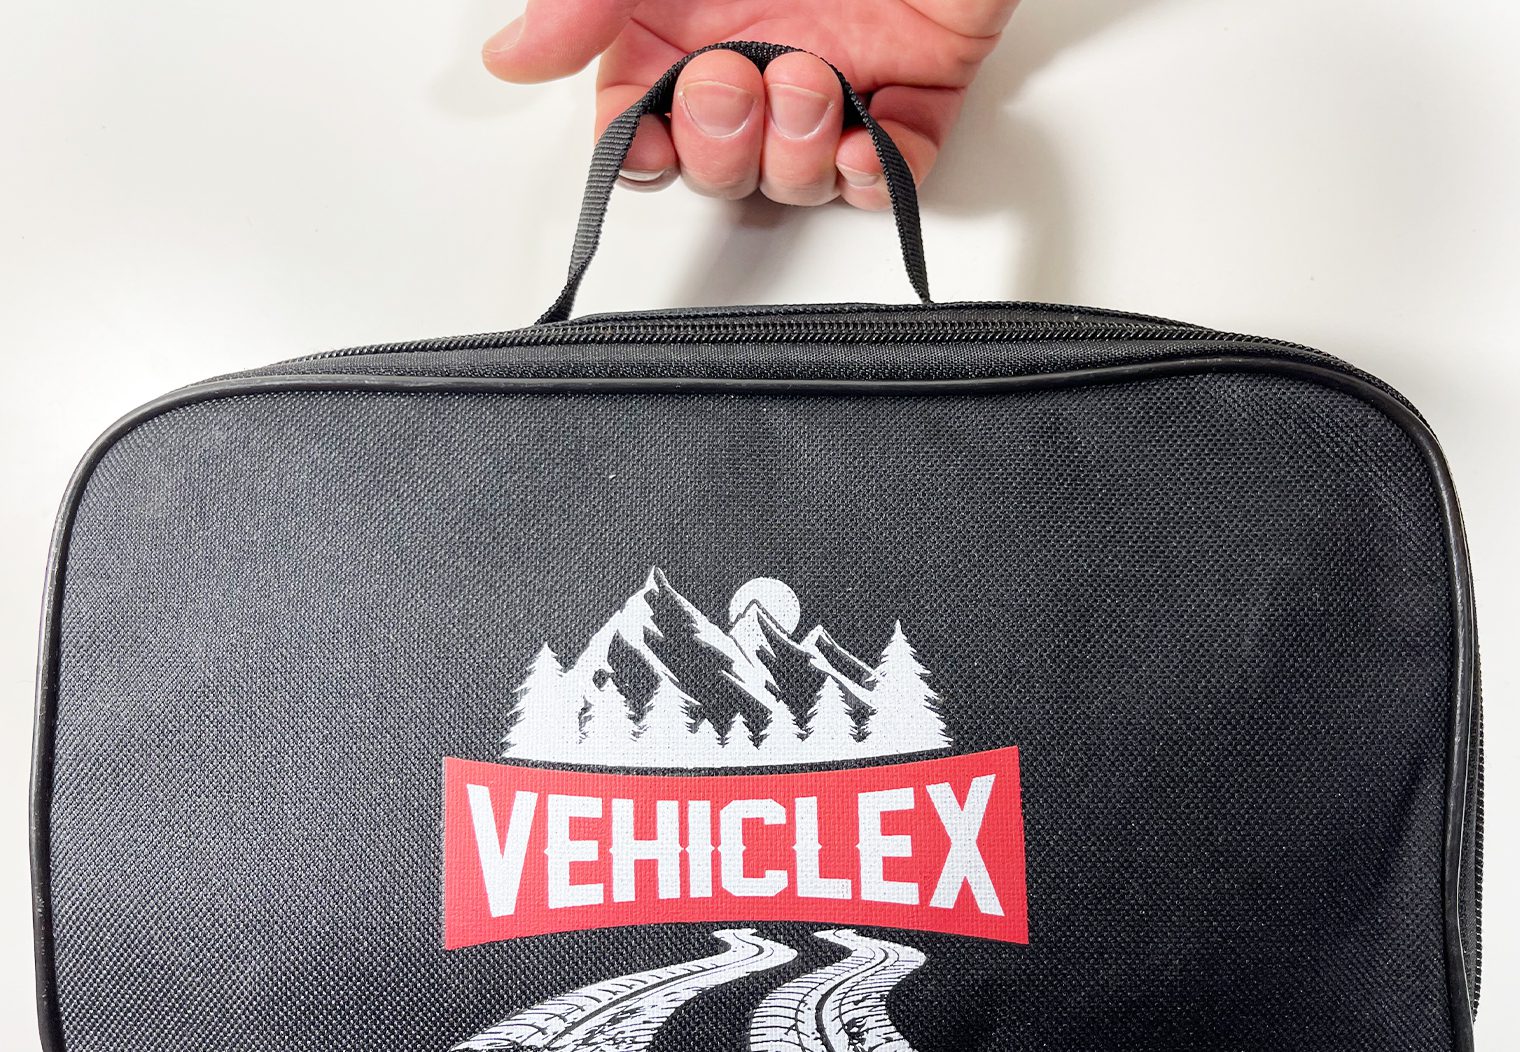 VehicleX Ratchet Tie-Down carrying bag handle